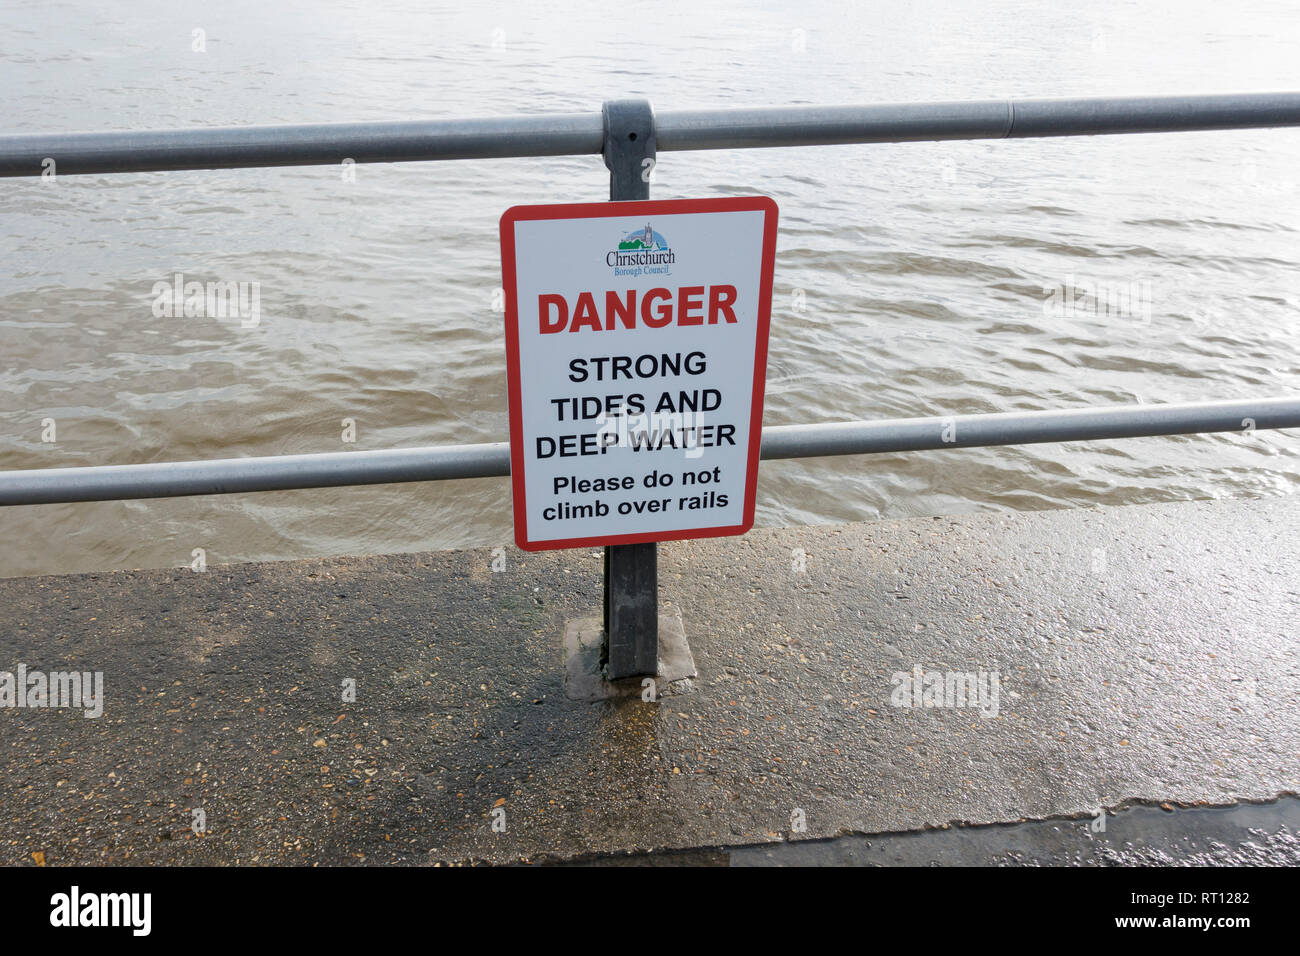 Aviso de peligro de las fuertes mareas y aguas profundas, Mudeford, Christchurch, Dorset, Reino Unido Foto de stock